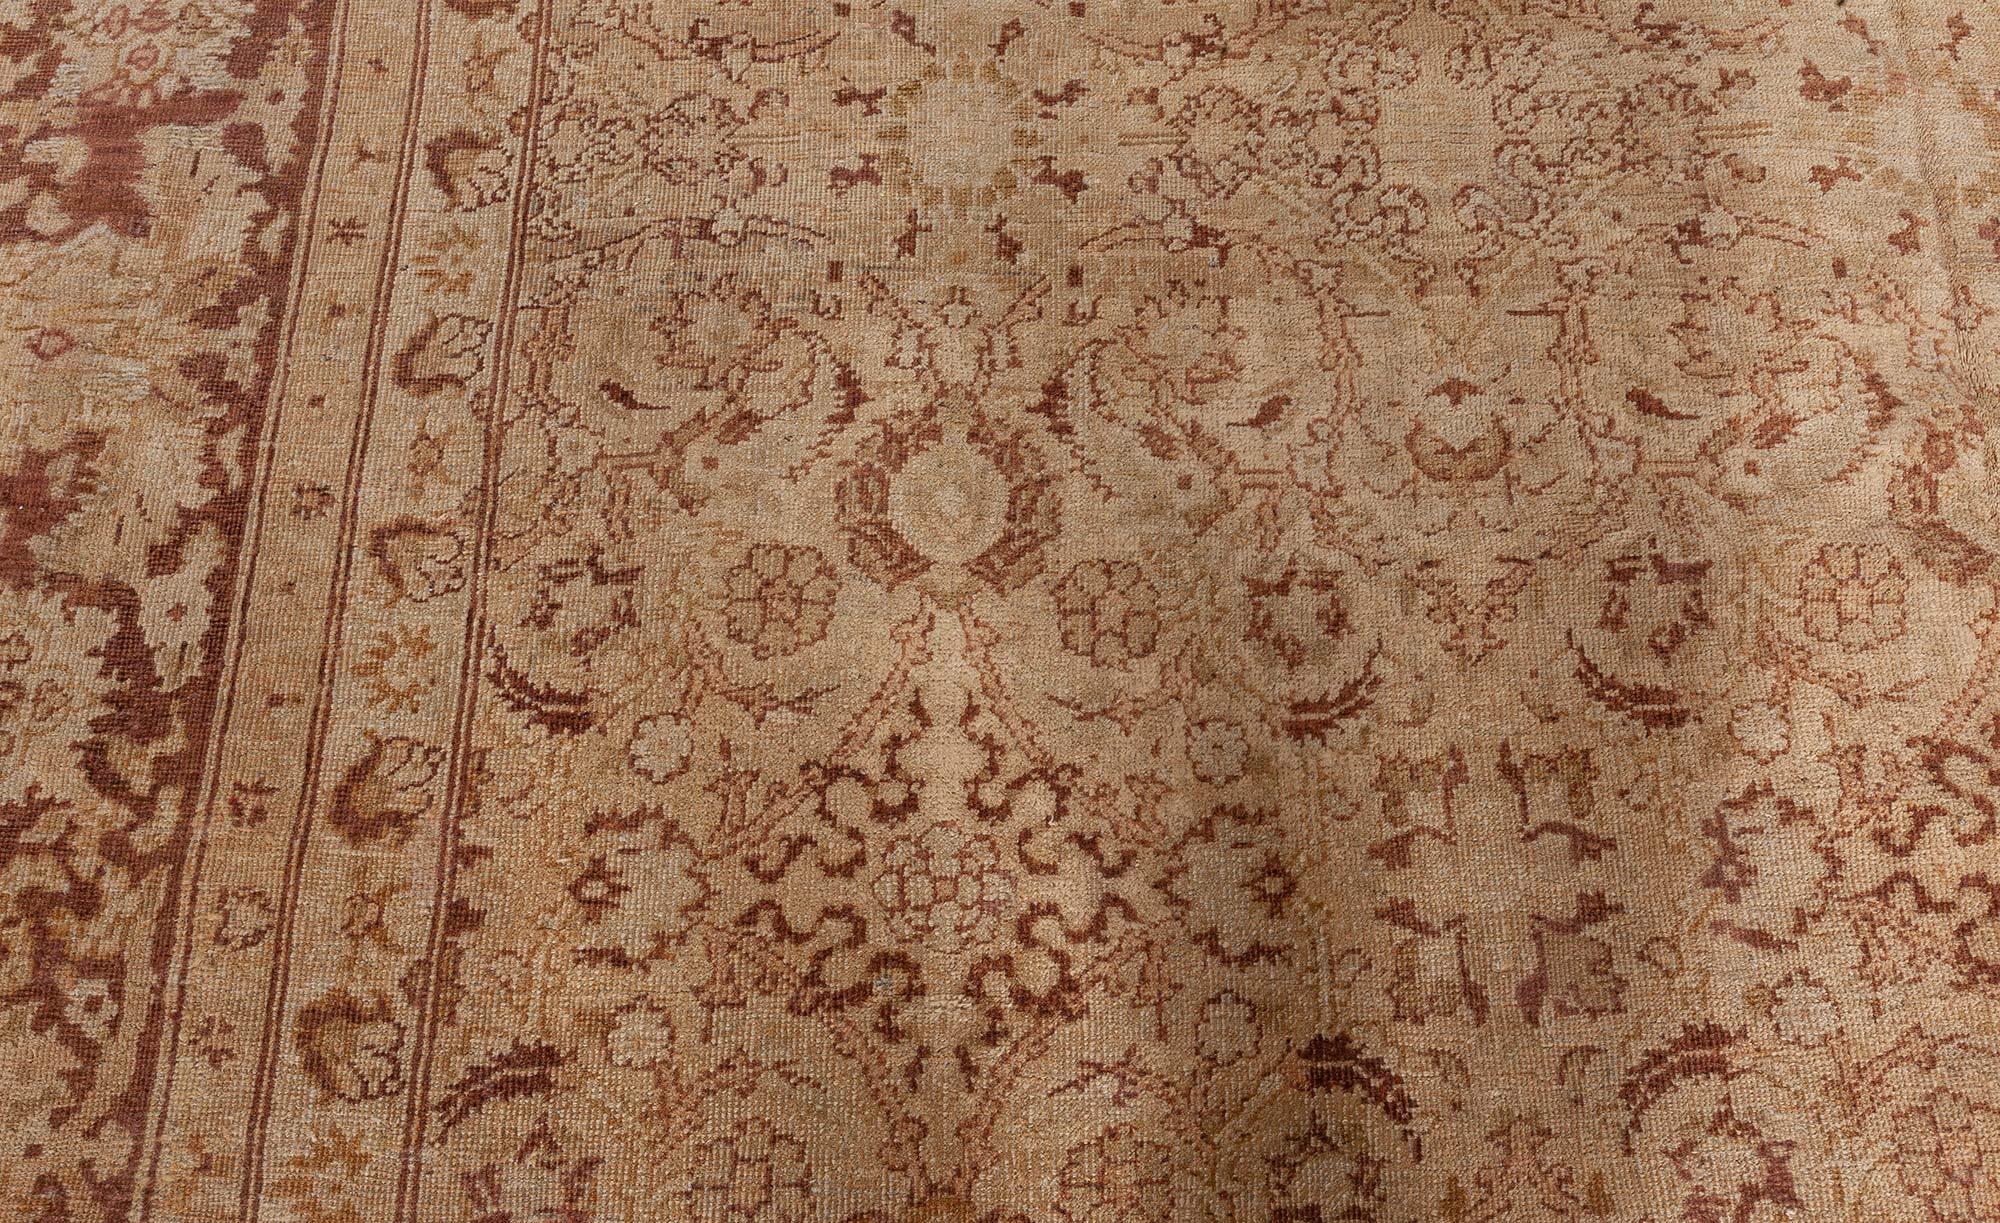 Authentischer brauner Teppich aus dem frühen 20. Jahrhundert aus Amritsar.
Größe: 9'10